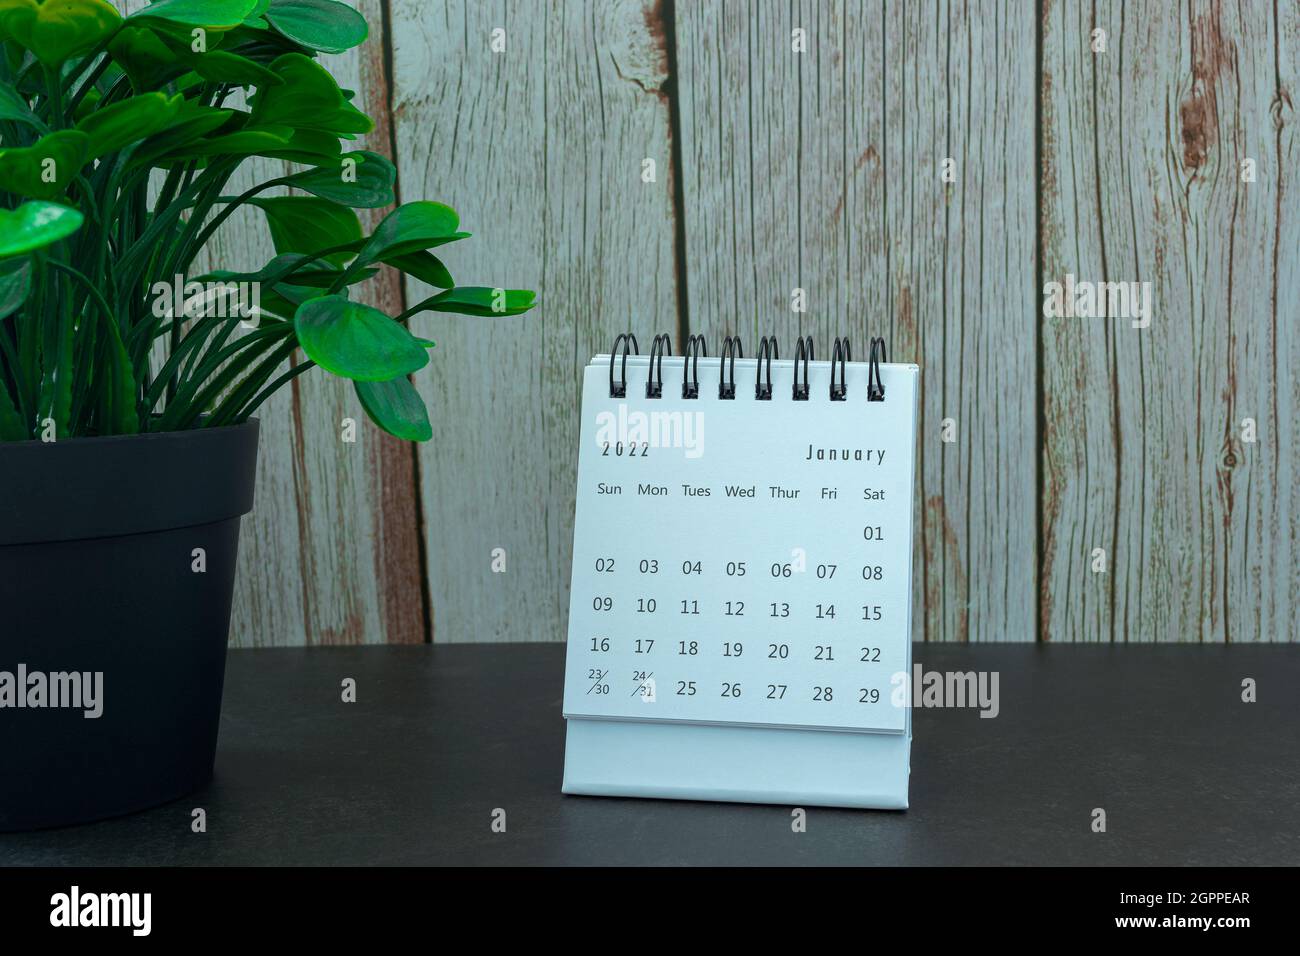 Calendrier blanc de janvier 2022 avec plante en pot. Concept du nouvel an 2022 Banque D'Images